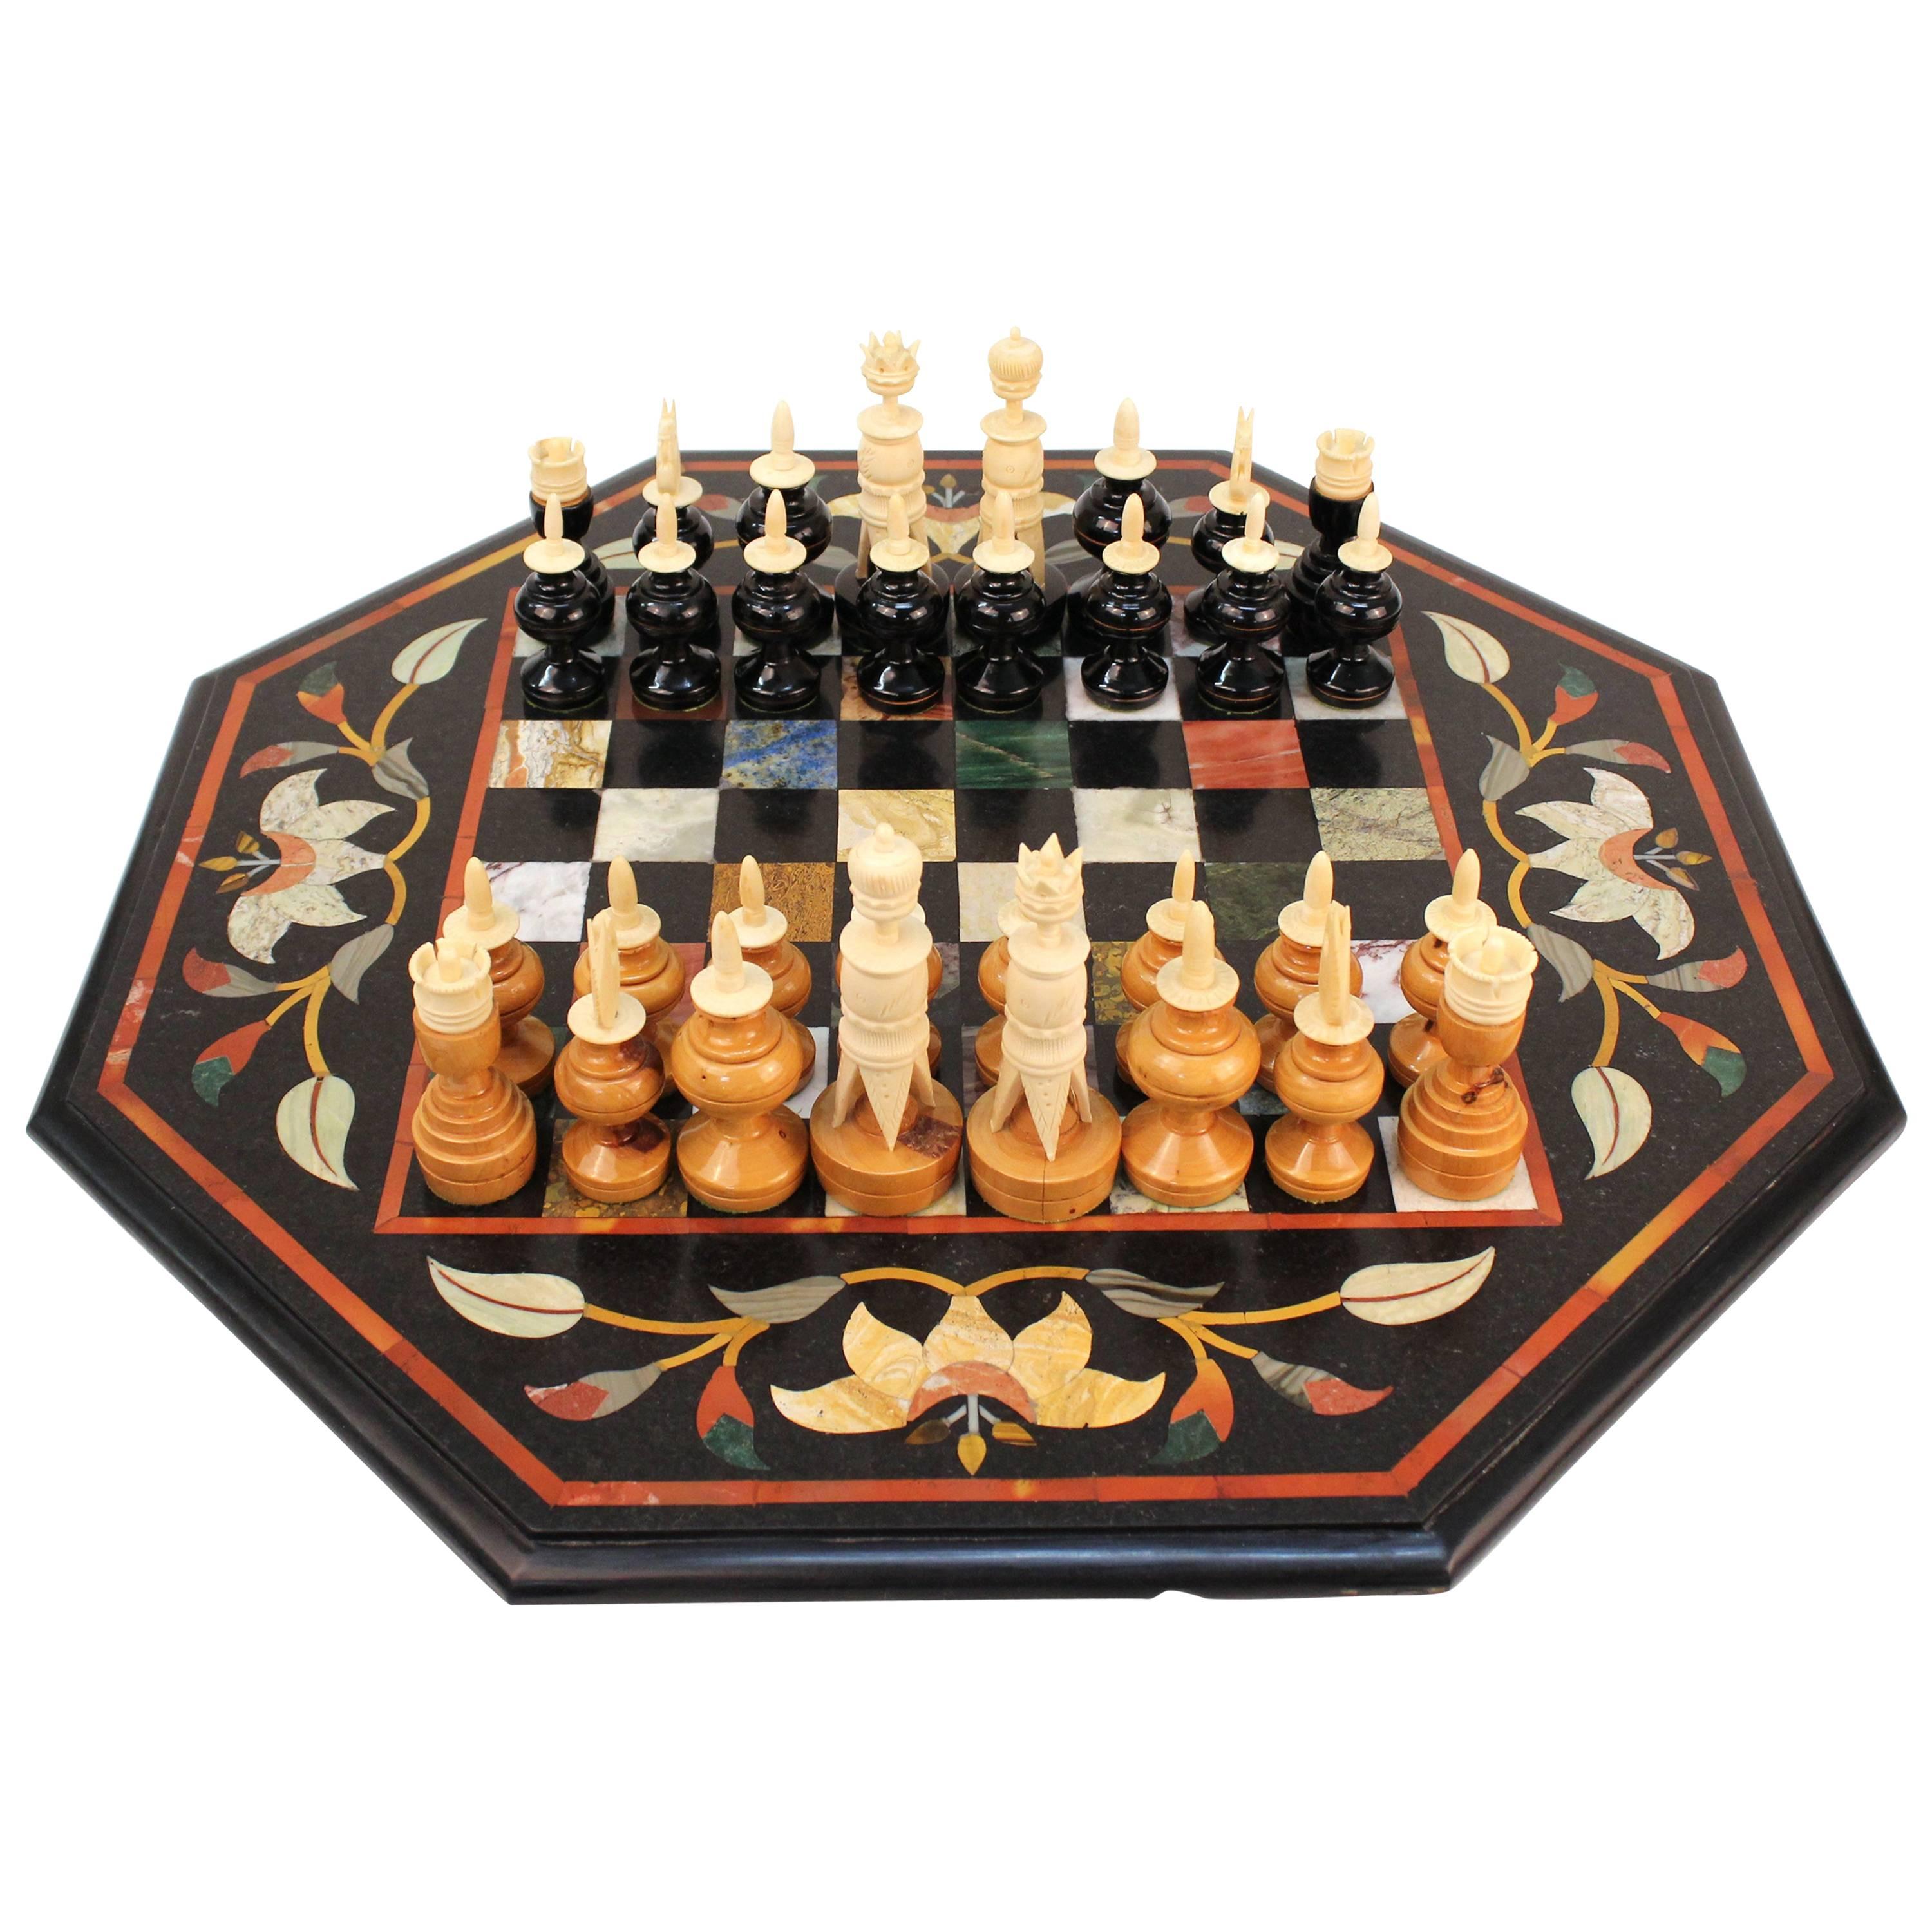 Italian Pietra Dura Chess Board with Semi-Precious Stone